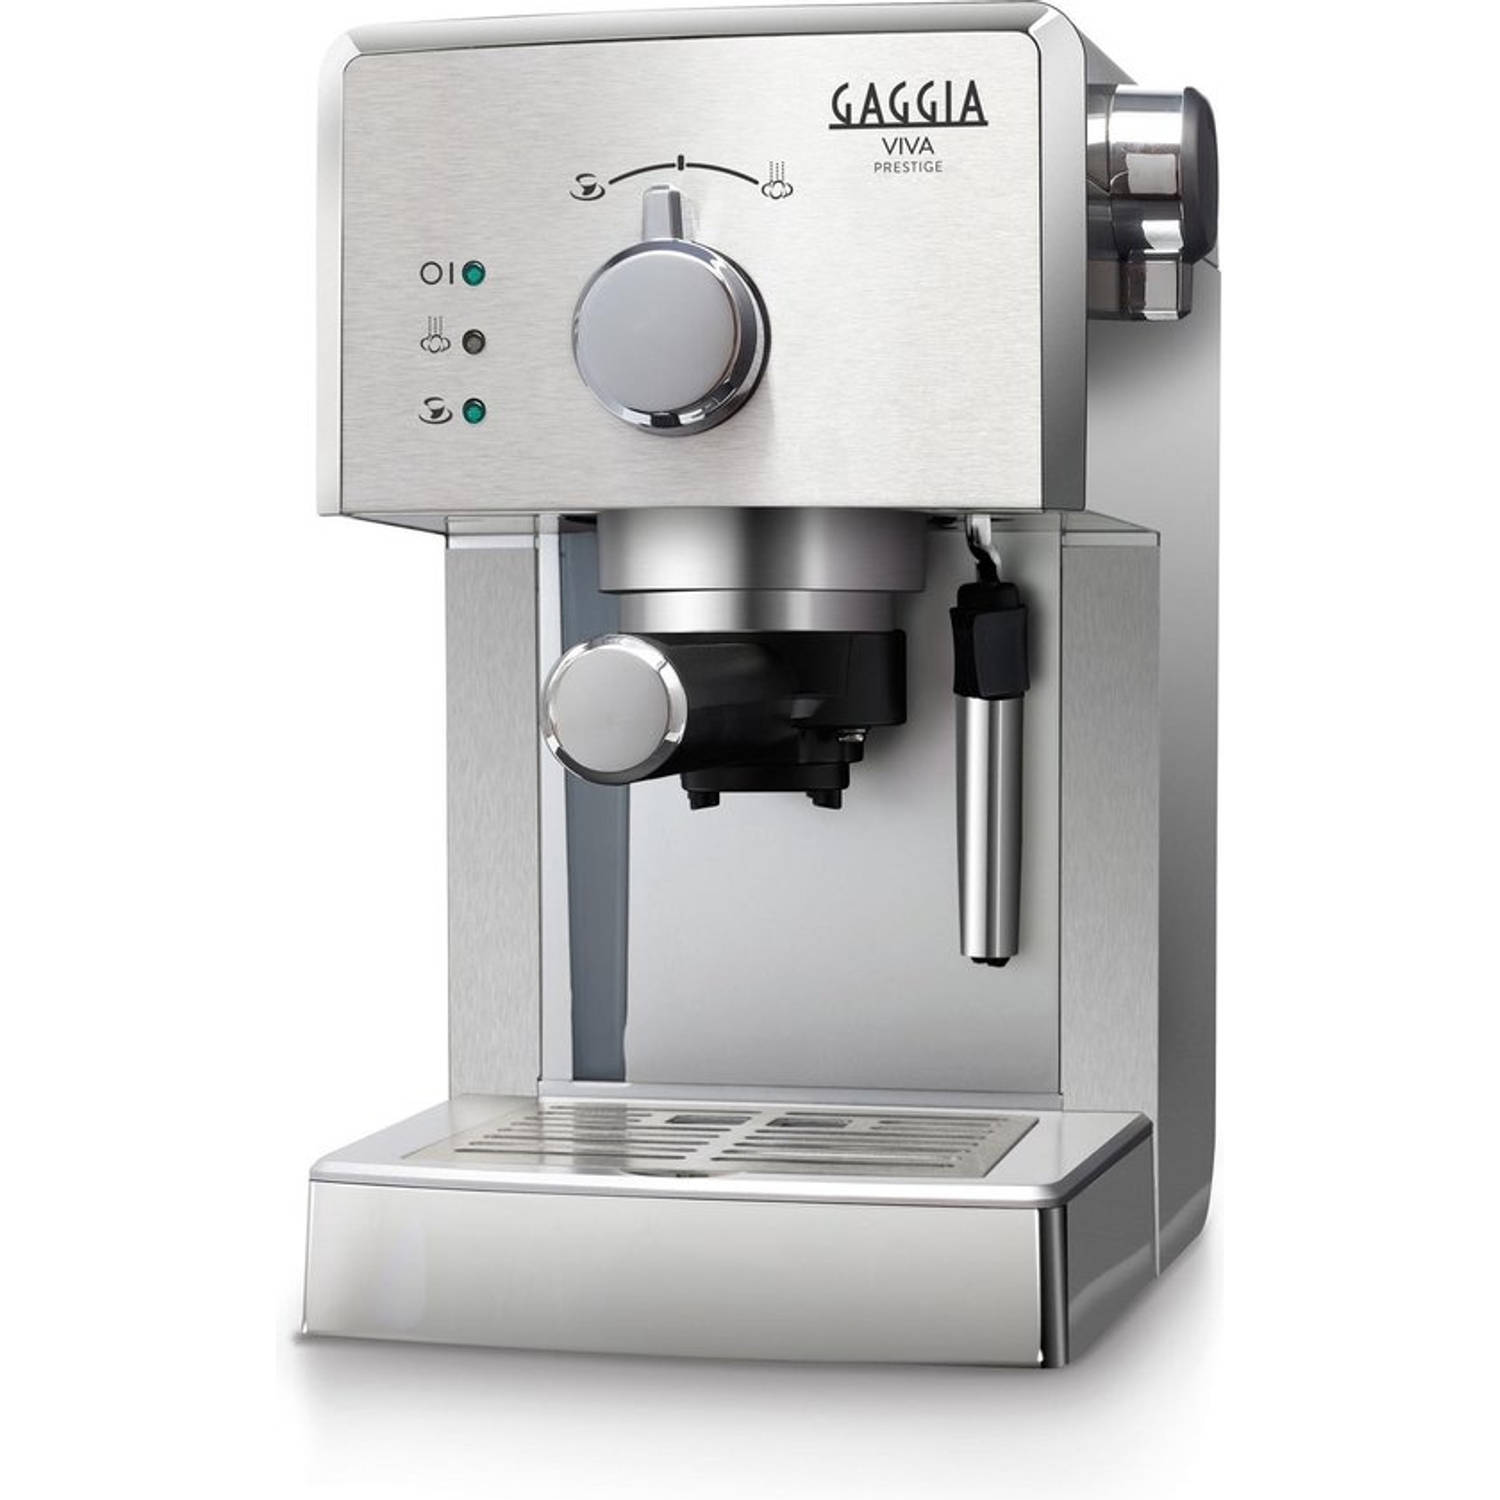 Gaggia koffiezetapparaat Aanrechtblad Espressomachine 1,25 l Handmatig Blokker